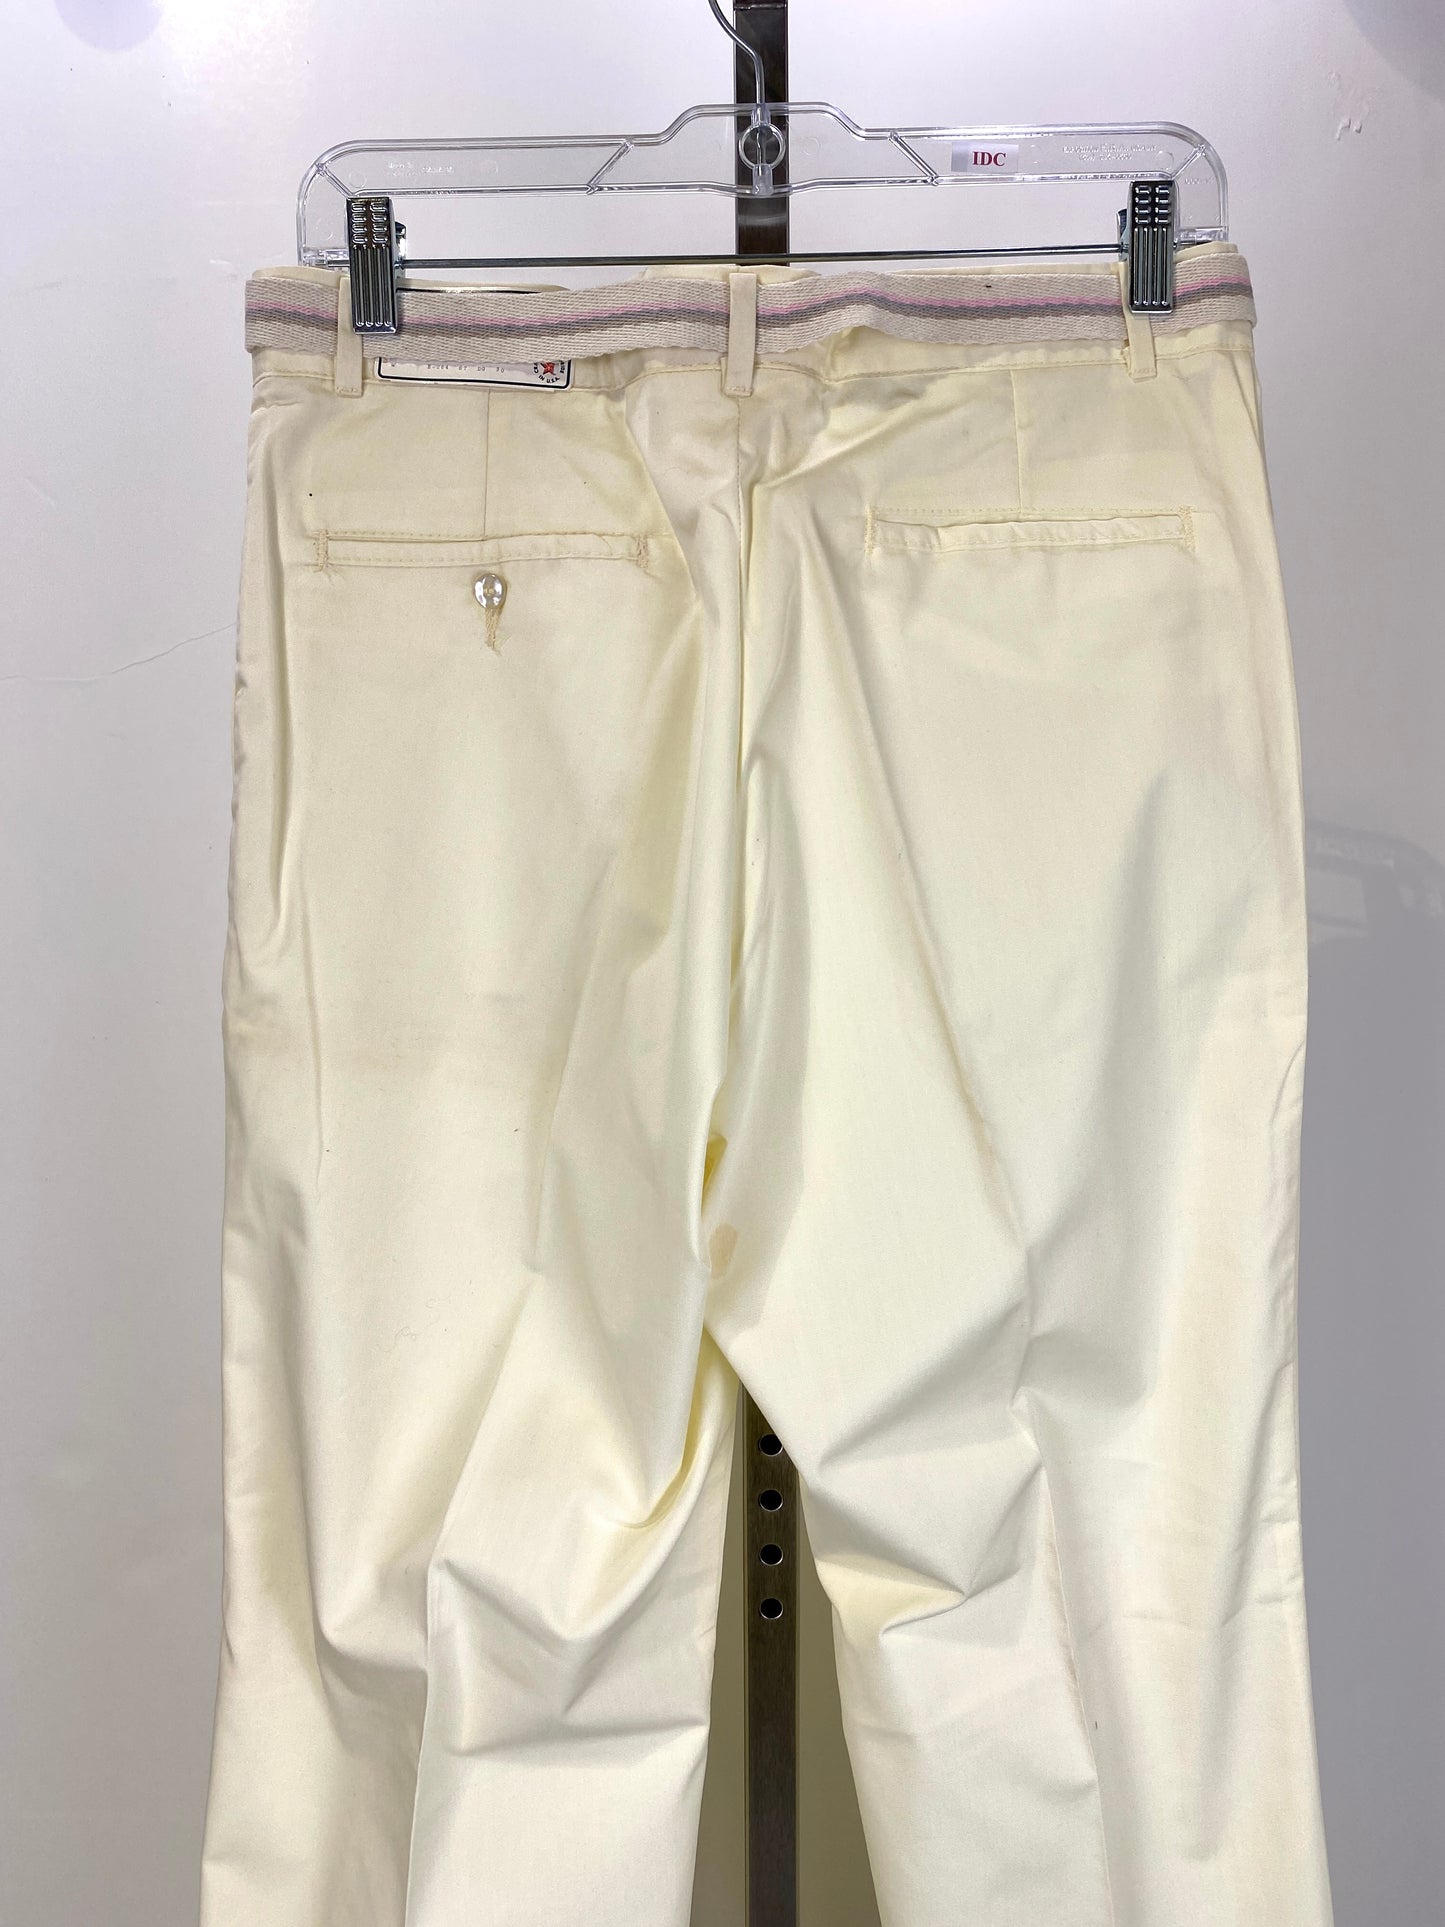 Vintage 1970s Deadstock Dee Cee Slacks, Men's Yellow Belted Pants, NOS